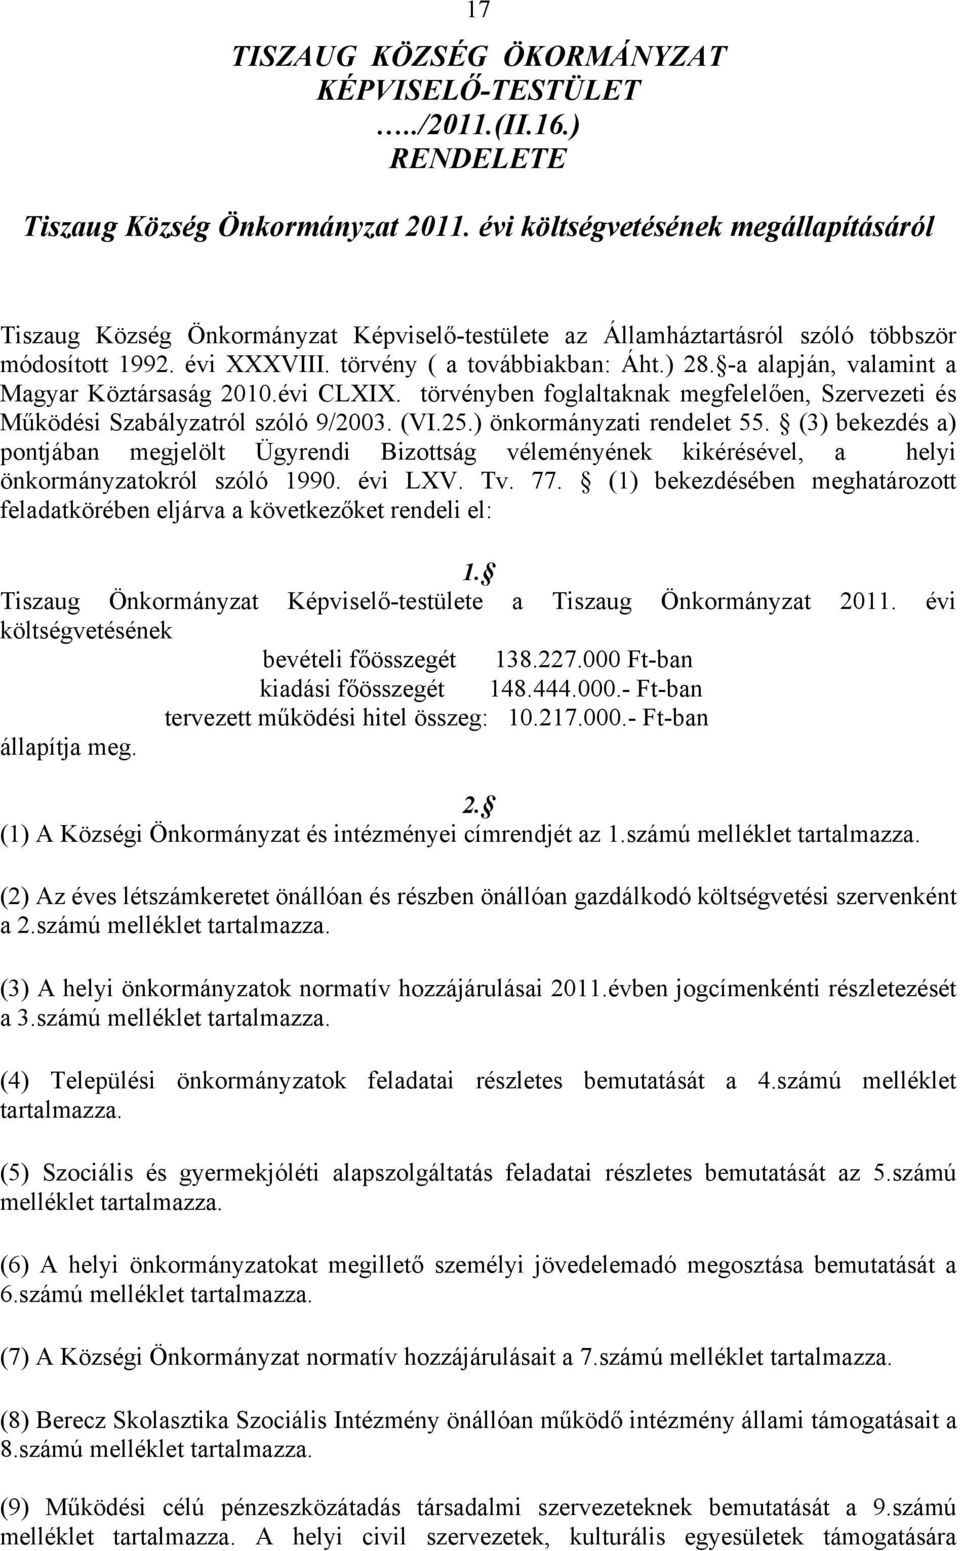 -a alapján, valamint a Magyar Köztársaság 2010.évi CLXIX. törvényben foglaltaknak megfelelően, Szervezeti és Működési Szabályzatról szóló 9/2003. (VI.25.) önkormányzati rendelet 55.